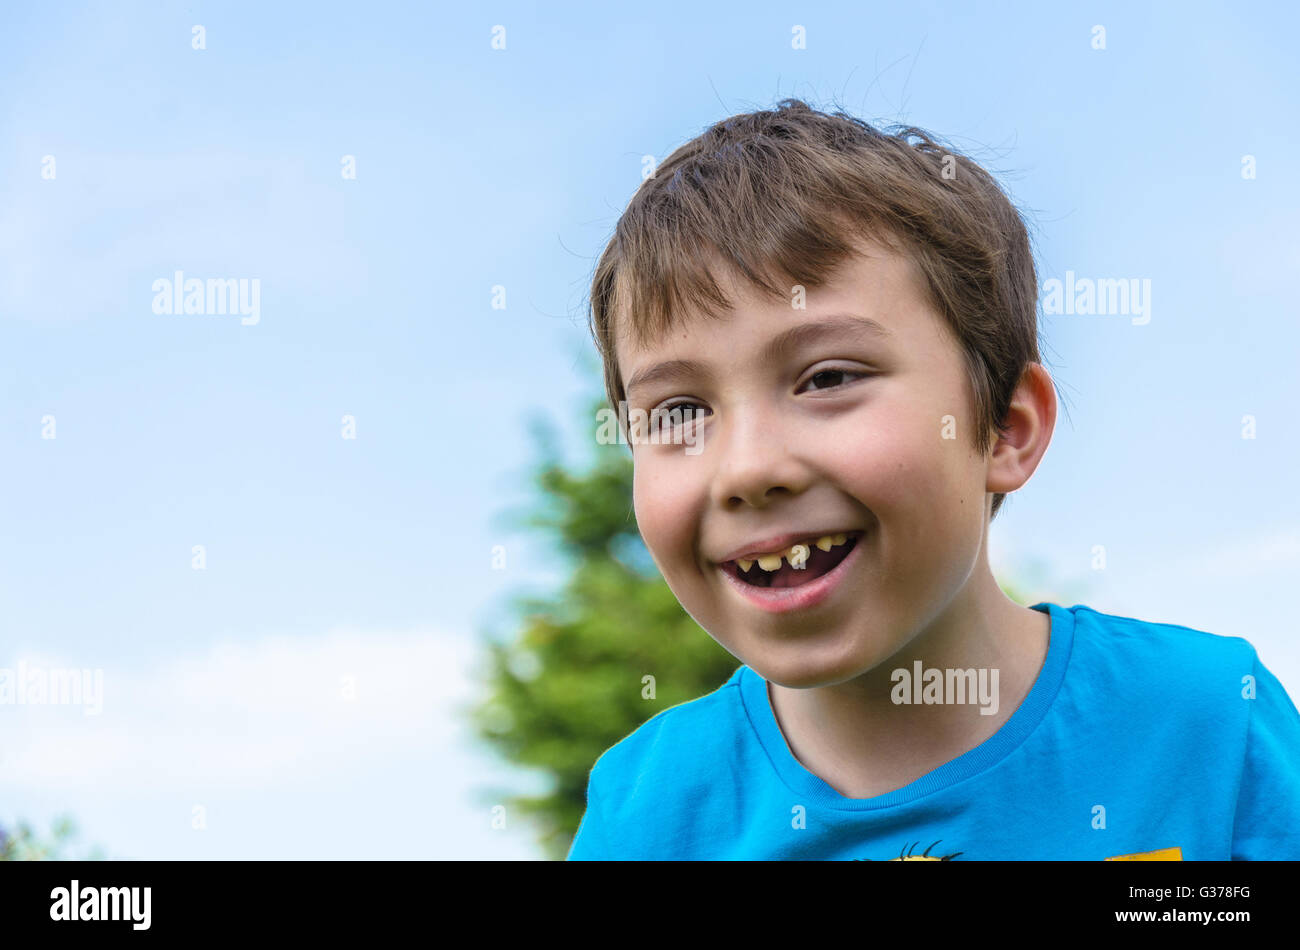 Un portrait d'un jeune garçon contre un ciel bleu. Banque D'Images